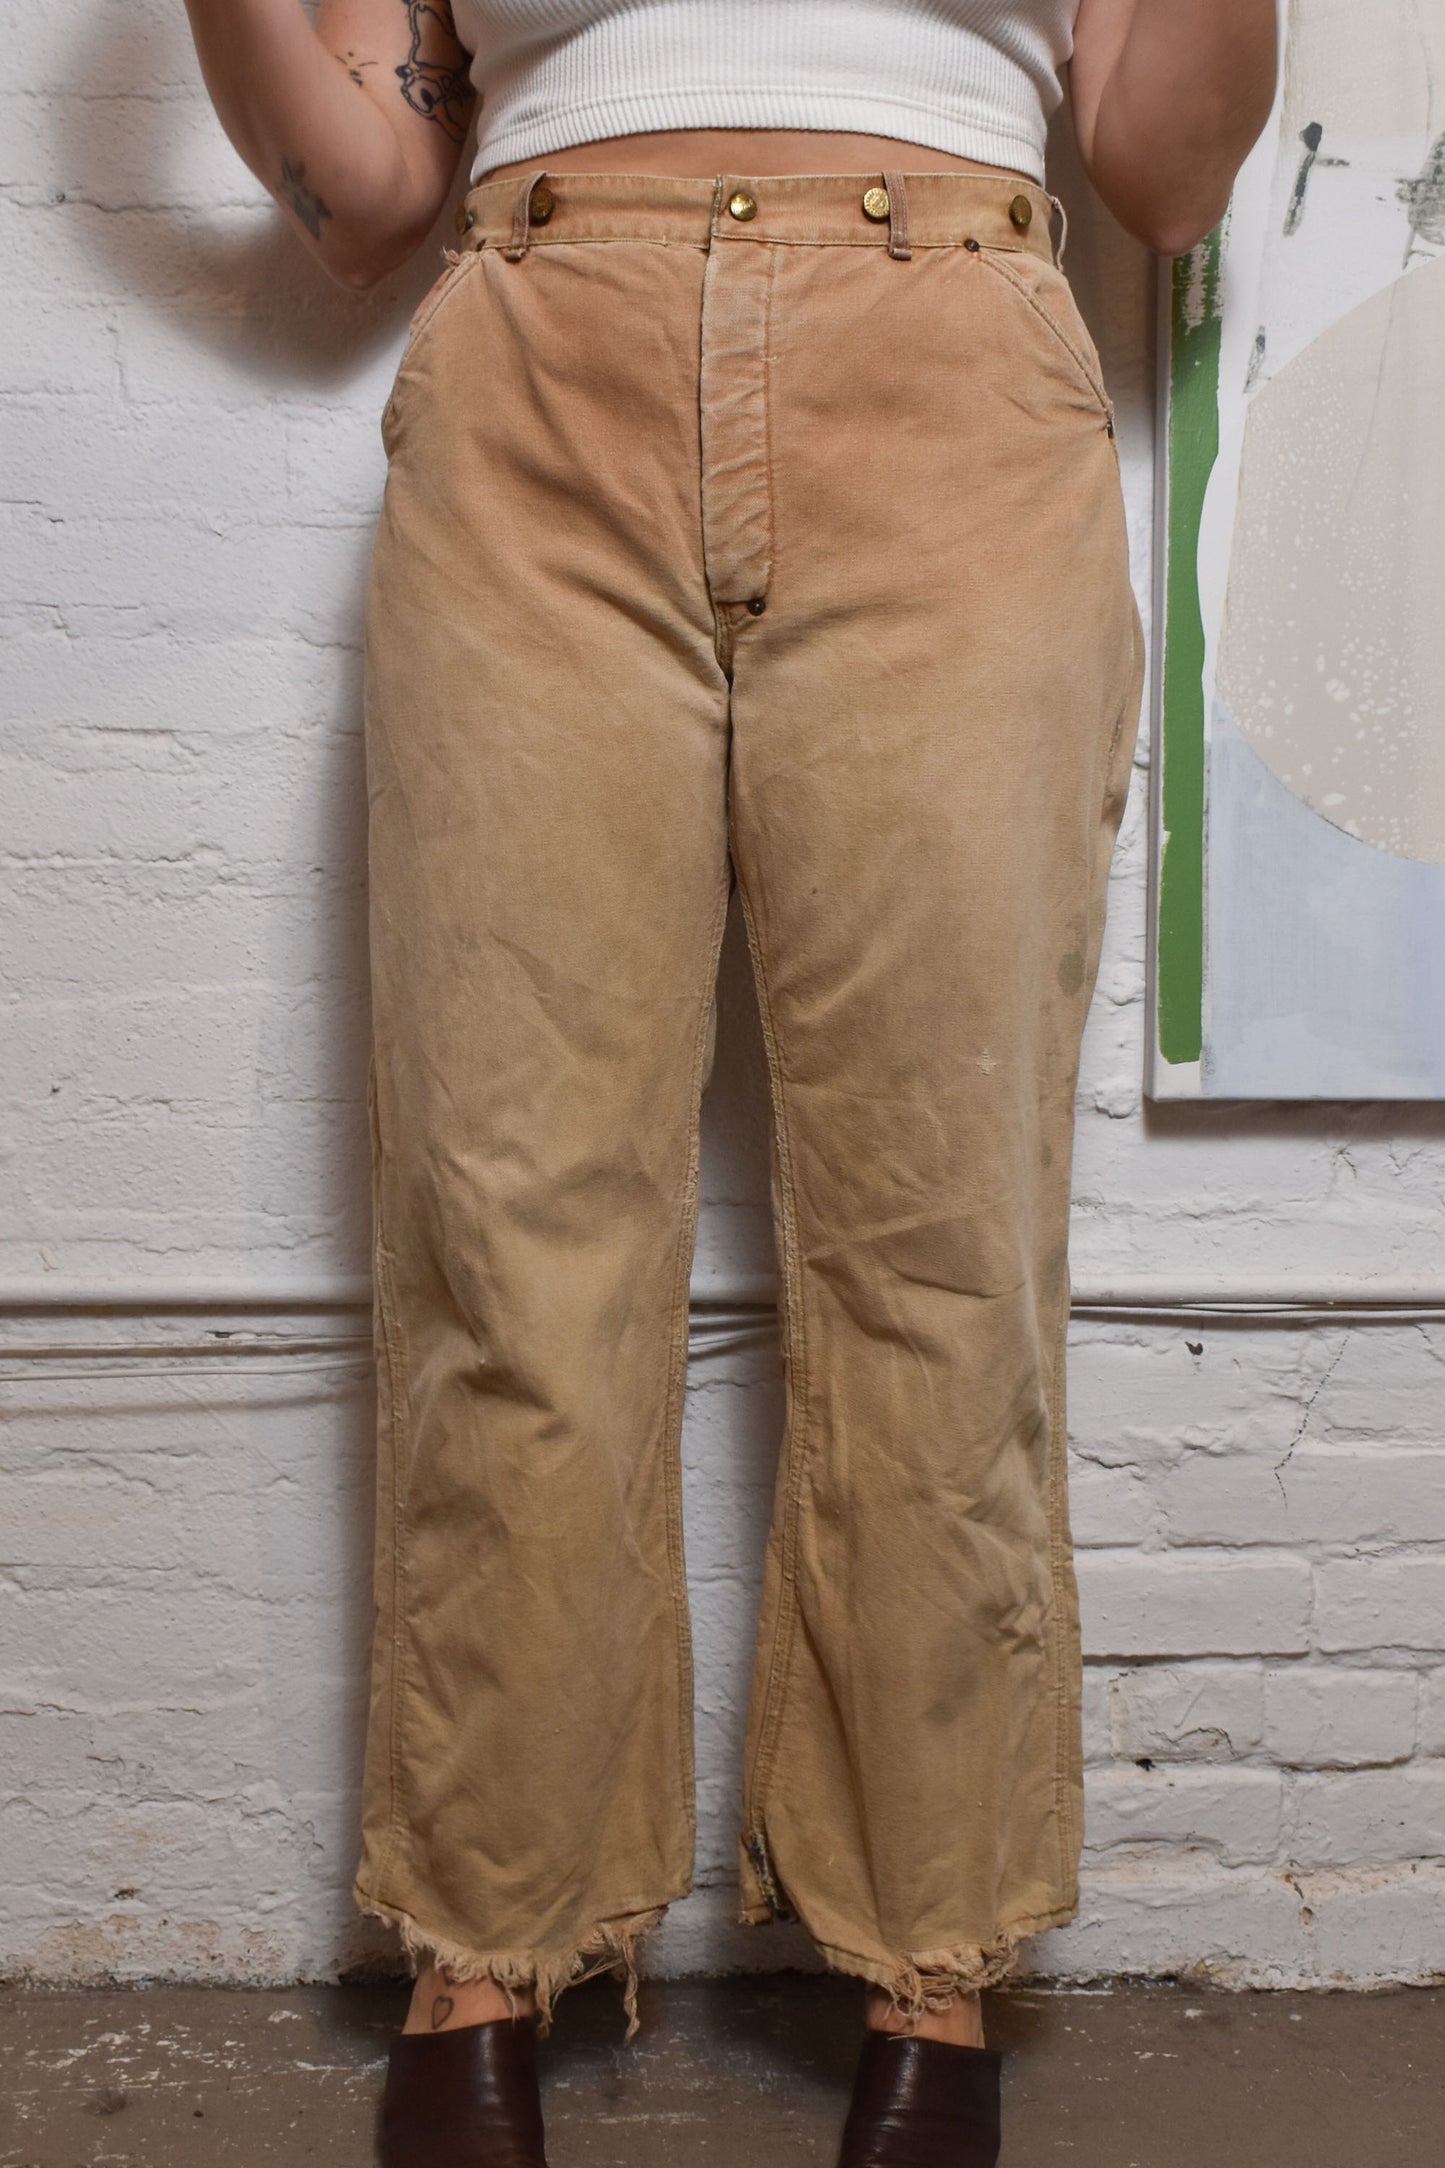 Vintage 1950's/1960s "Carhartt" Blanket Lined Work Pants